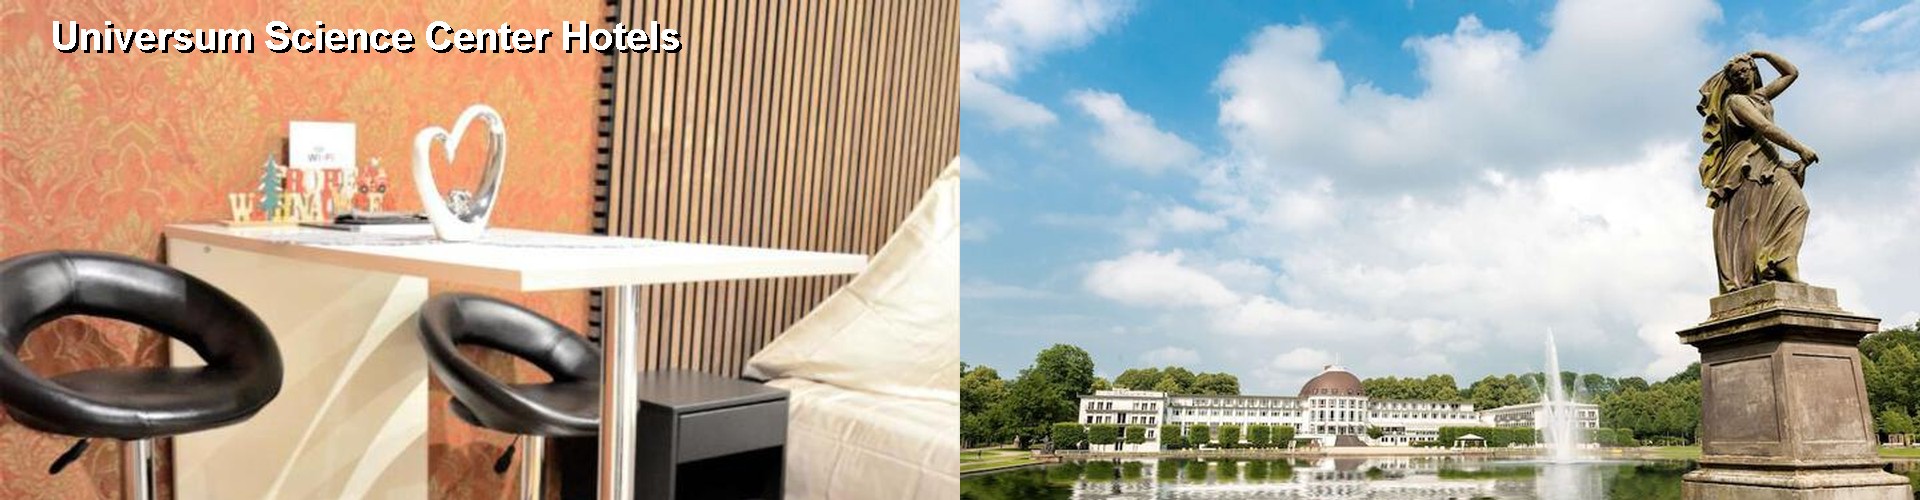 5 Best Hotels near Universum Science Center